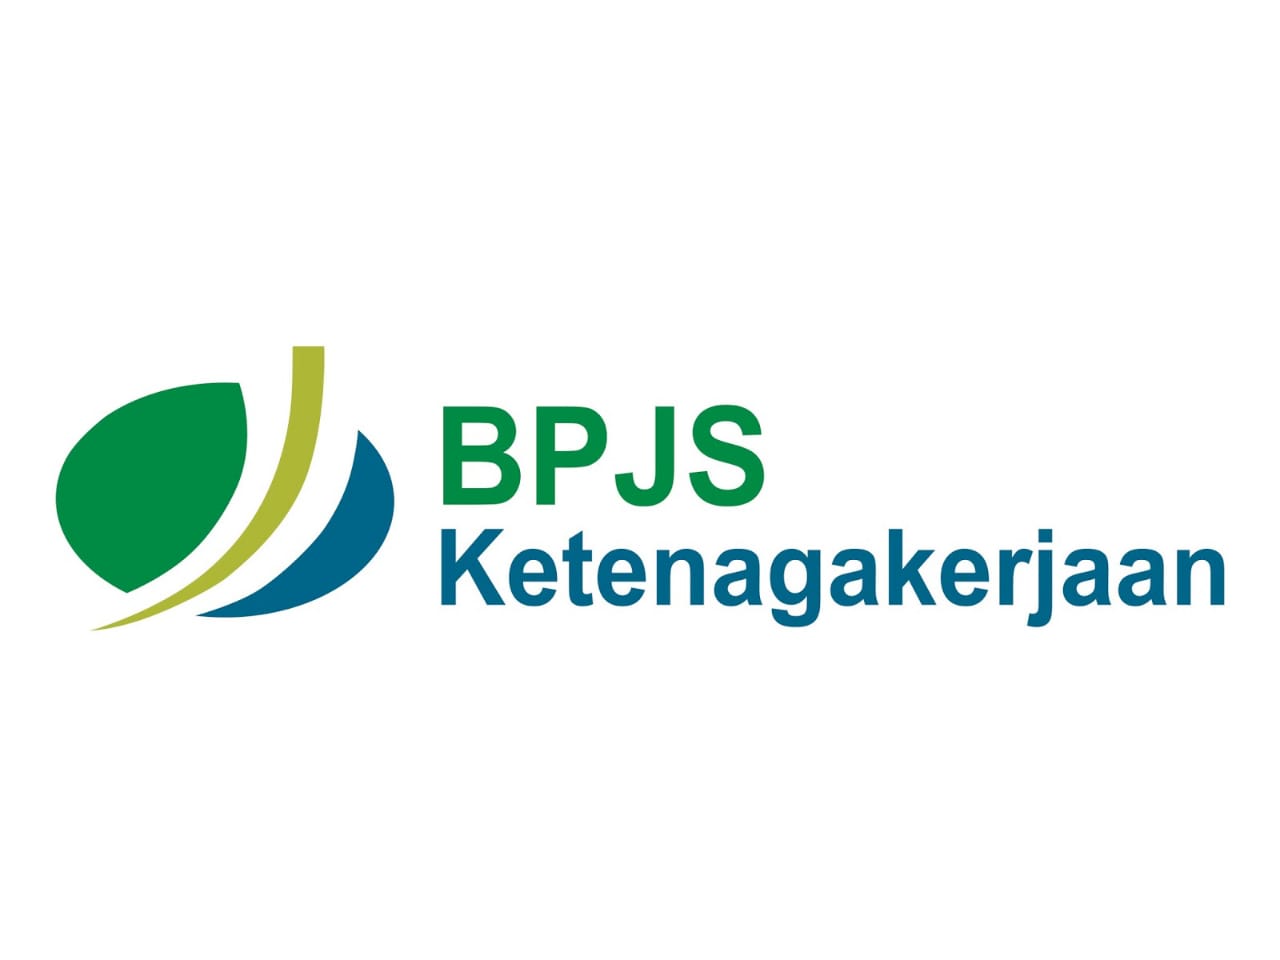 BPJS Ketenagakerjaan Optimis Hadapi Target 2019